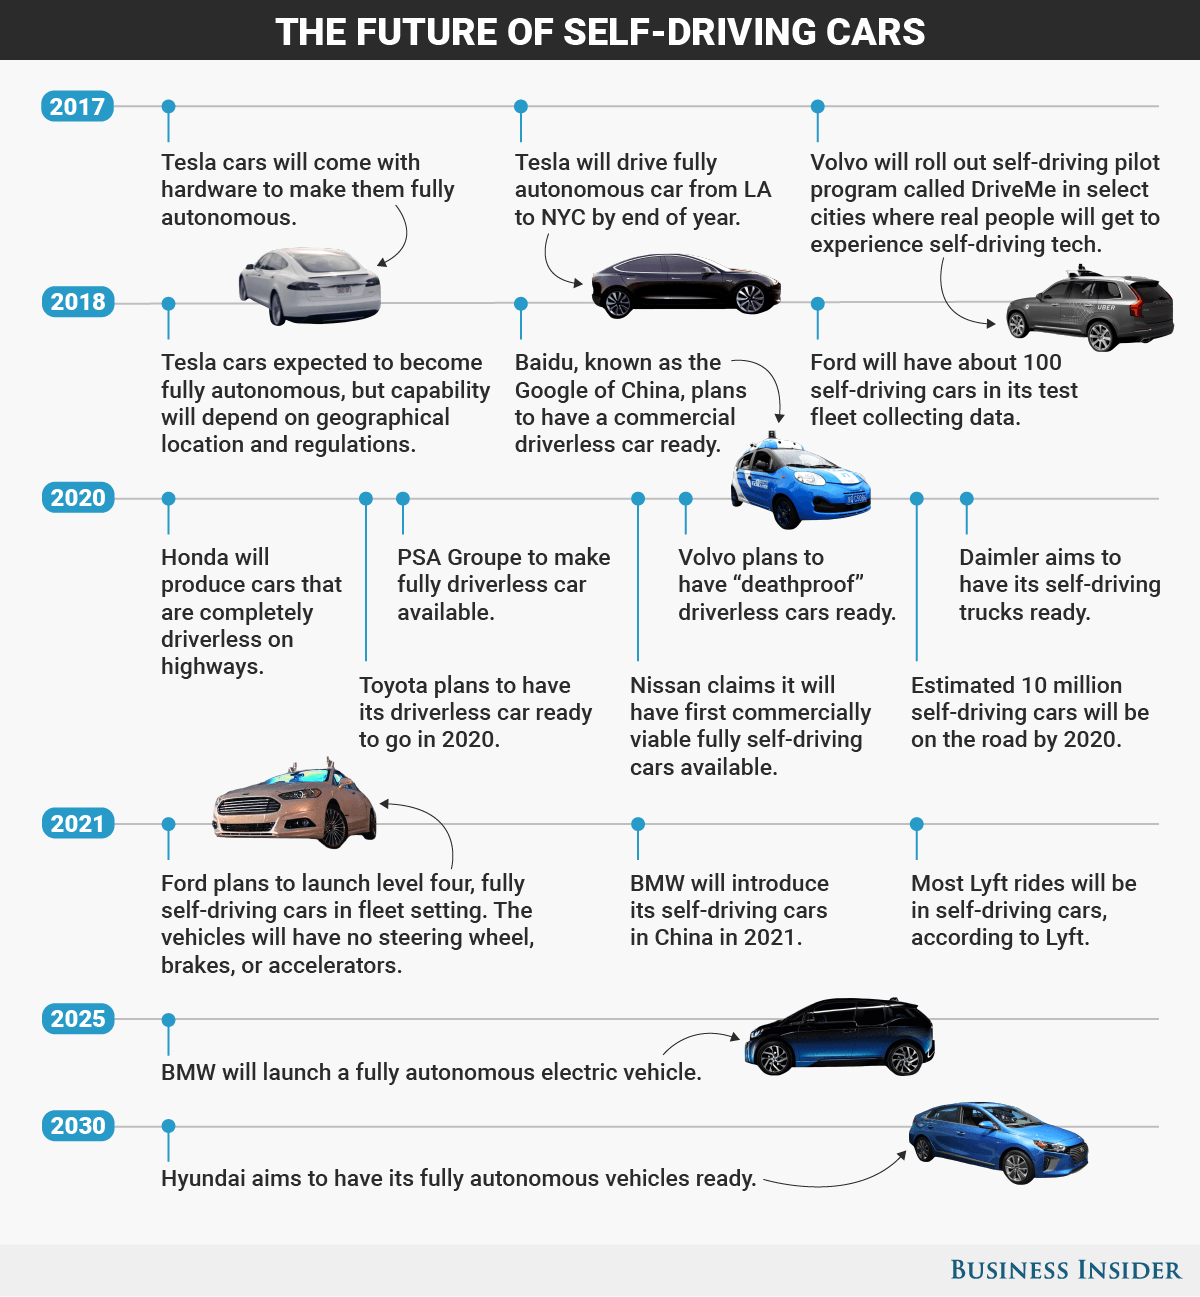 Tijdlijn voor de innovatie rond zelf-rijdende auto's. Graphic: Business Insider.